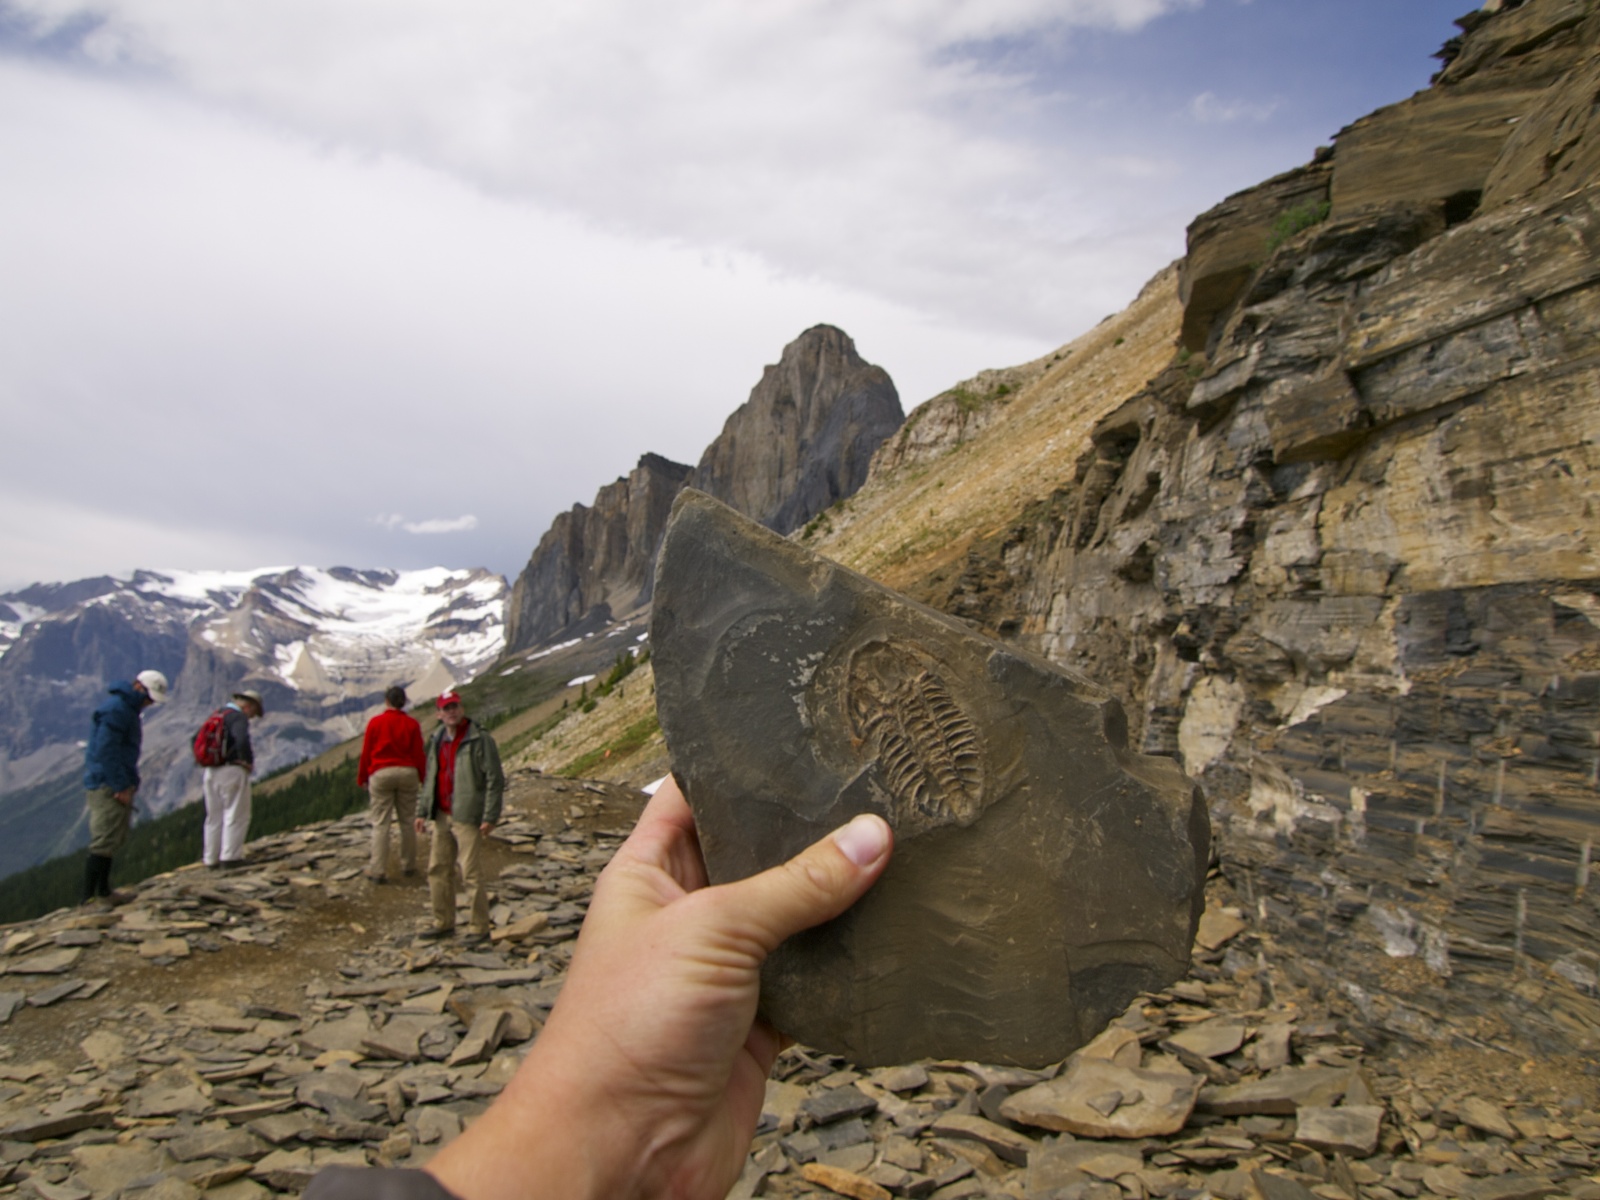 «Burgess Shale» - уникальная горная формация на склонах горы Маунт-Стивен в национальном парке Йохо в канадской части Скалистых гор на территории провинции Британская Колумбия. Это одно из богатейших в мире мест палеонтологических находок и лучшее в своём роде среди отложений кембрийского периода. Содержит множество окаменелостей. Некоторые ископаемые имеют аналоги и уныне живущих организмов.